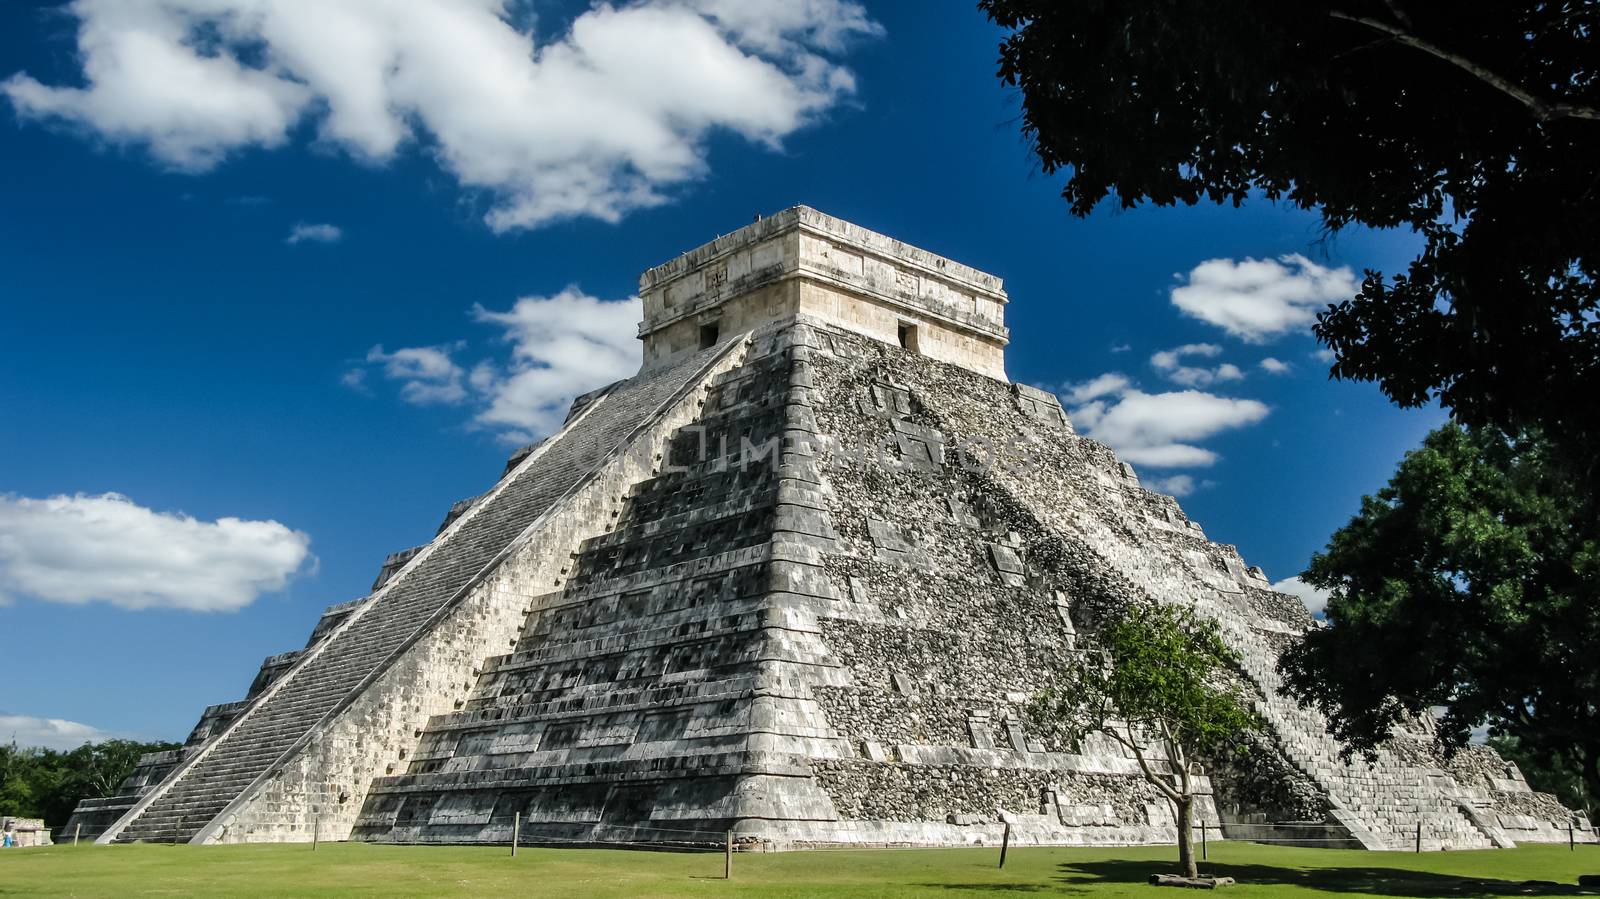 Pyramid of Kukulkan in Chichen Itza maya city, Yucatan Mexico by homocosmicos